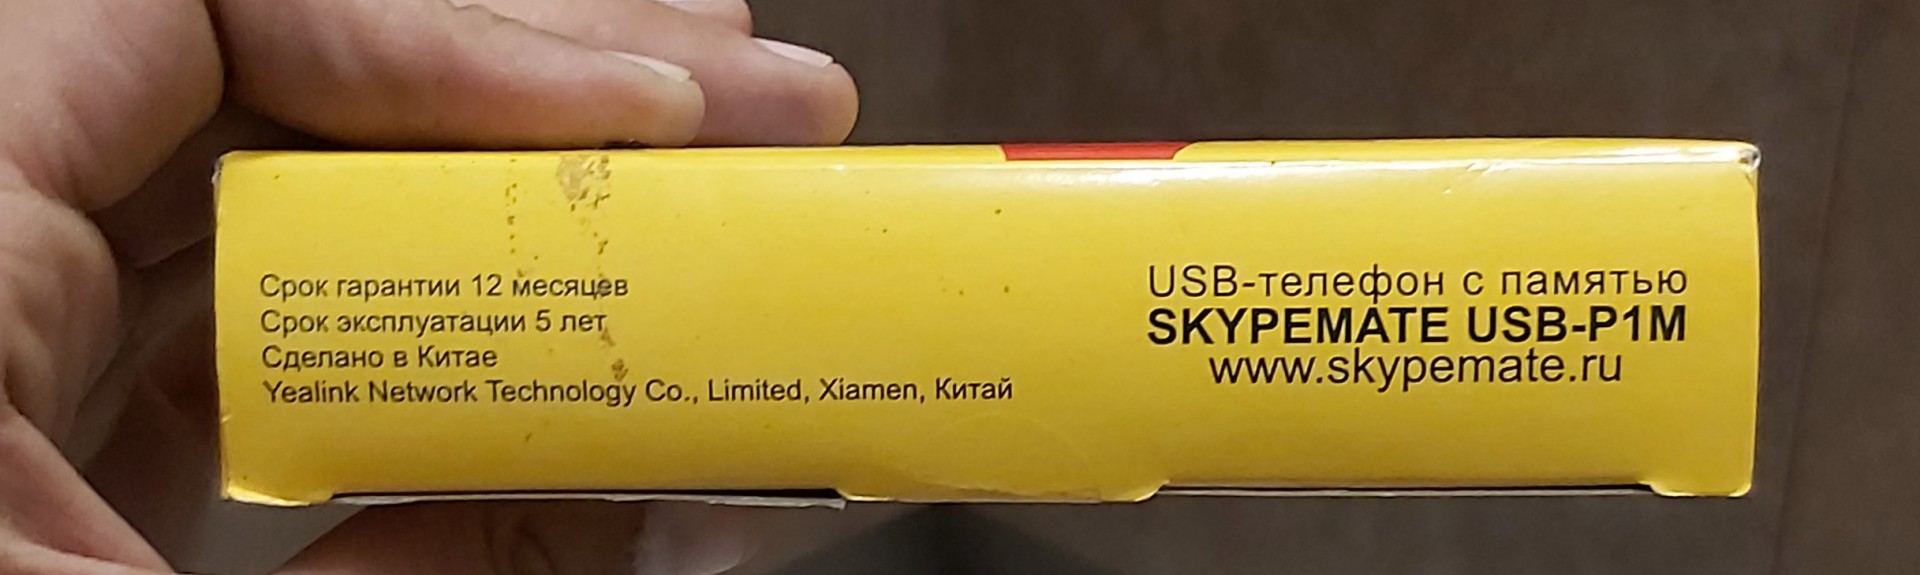 Капсула времени. USB-телефон SkypeMate USB-P1K - ЯПлакалъ